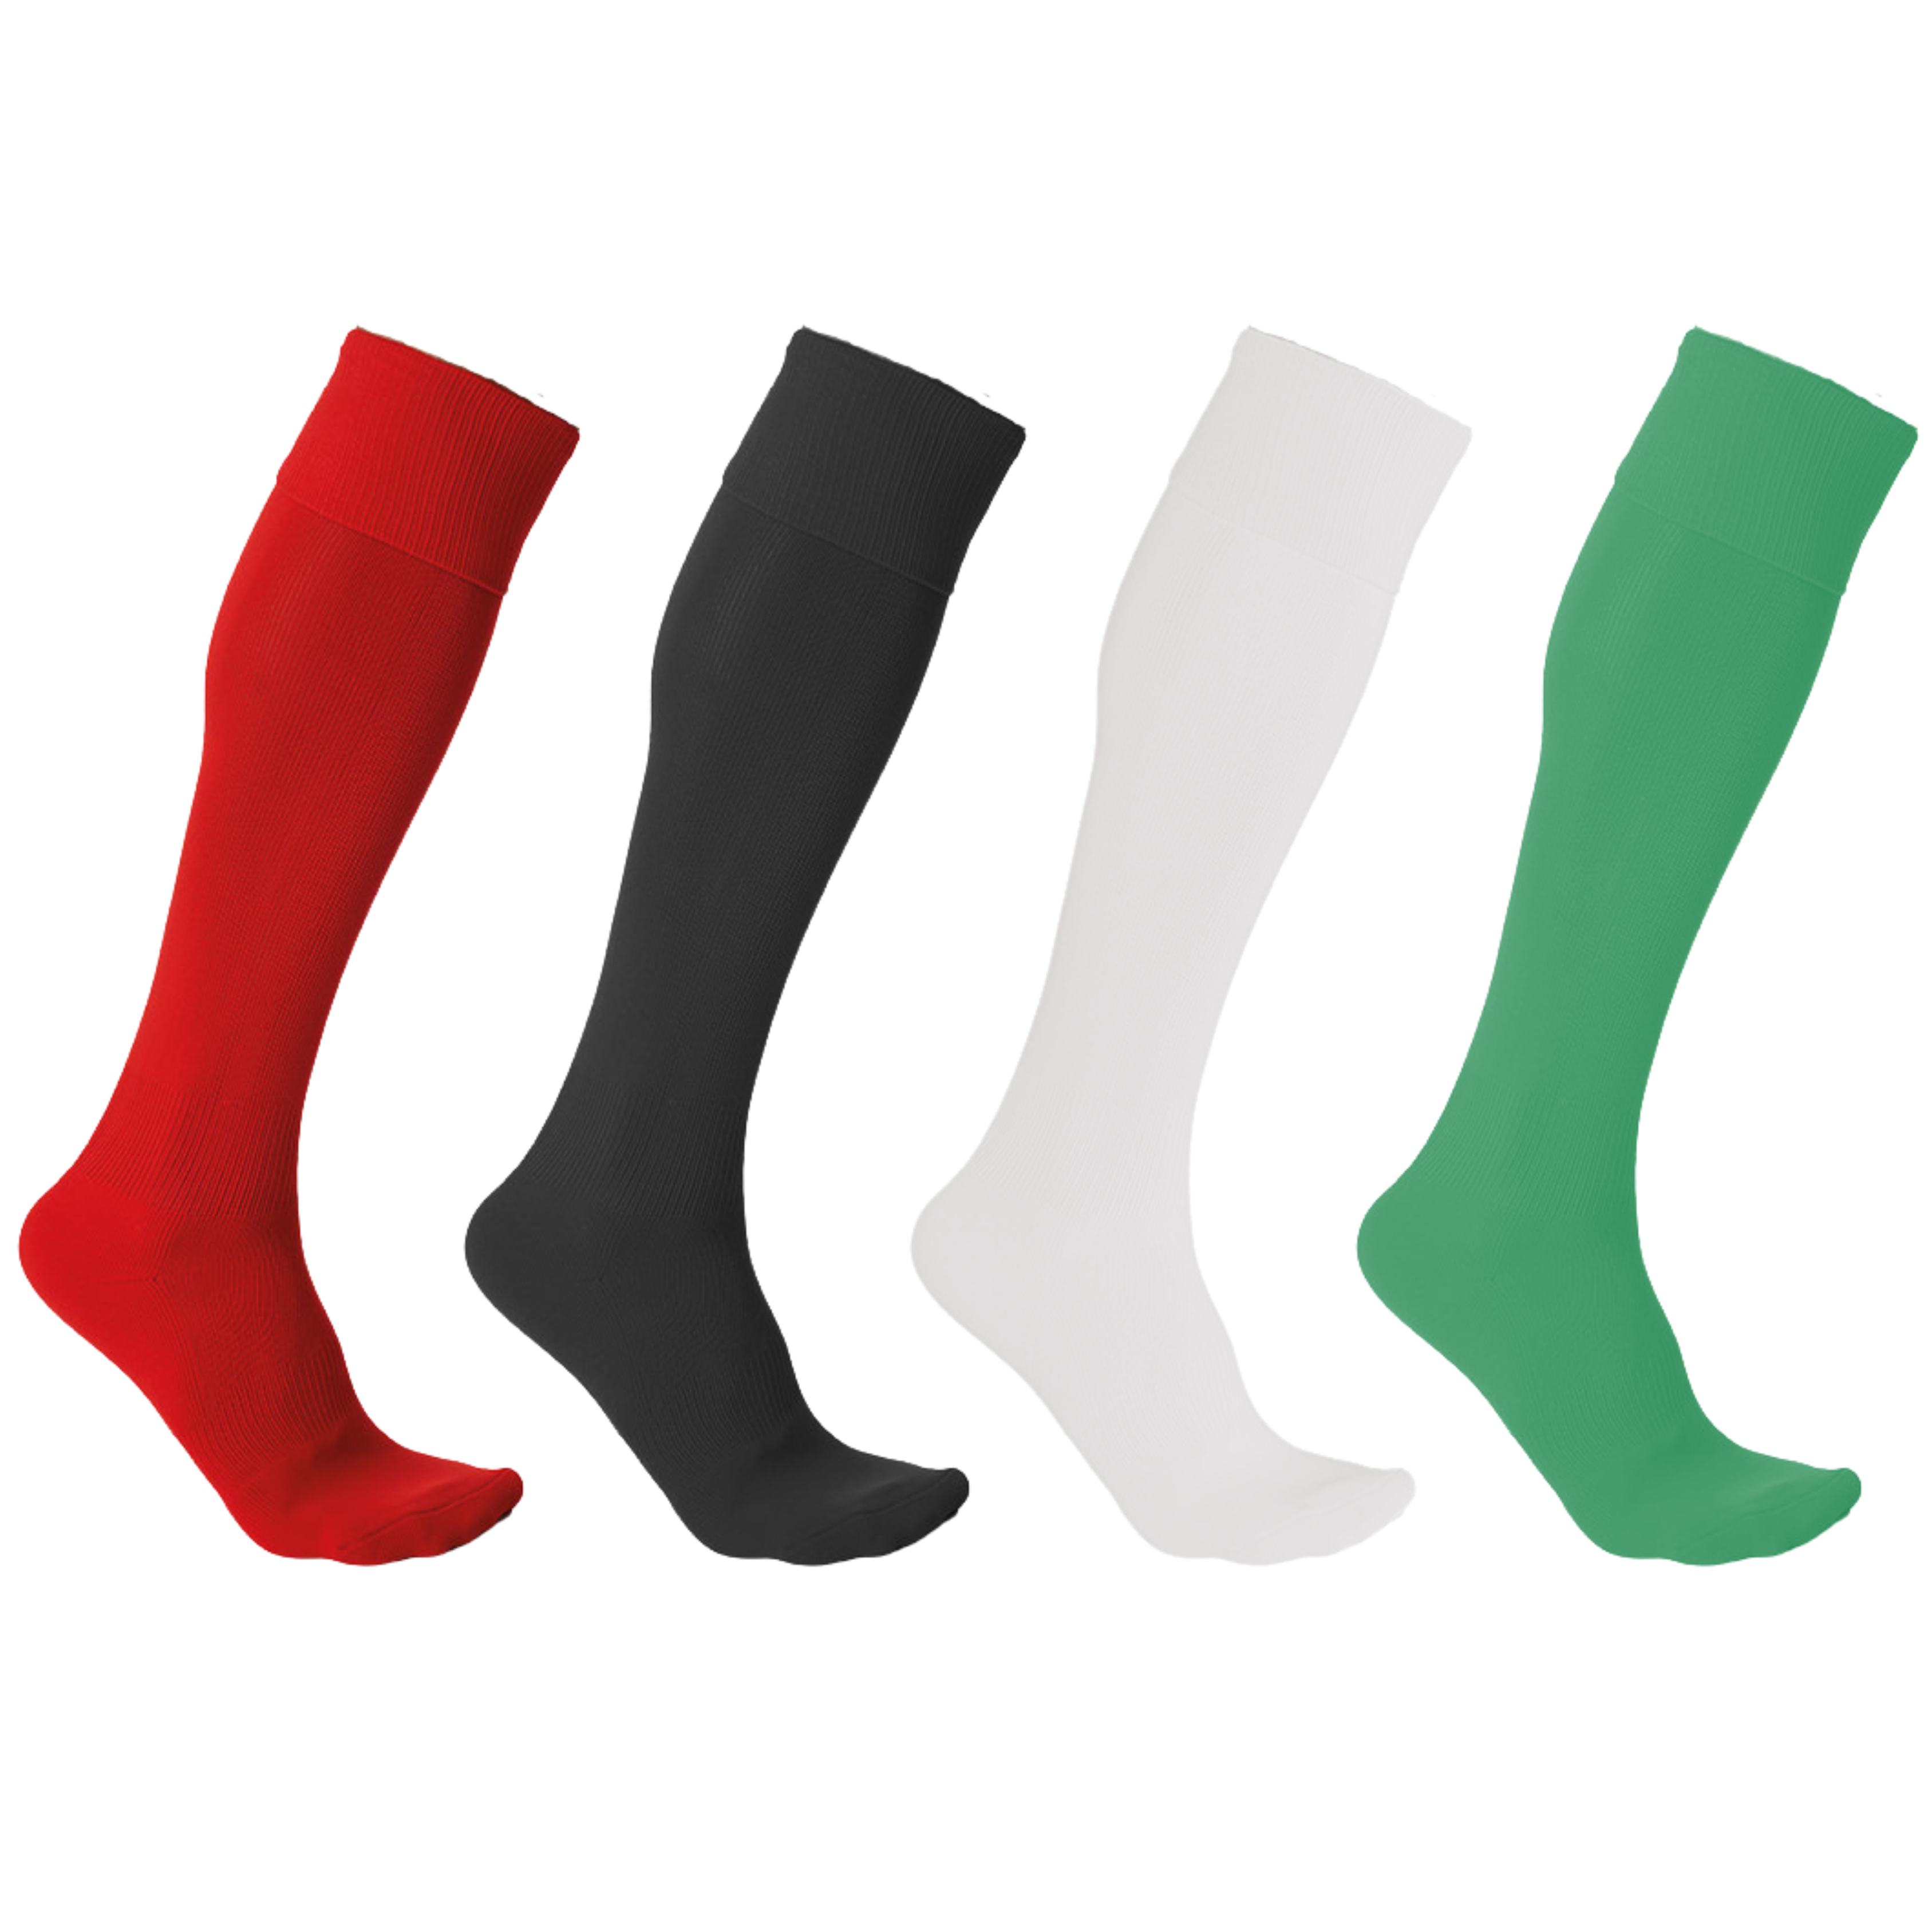 Socks Pro Nylon Plain